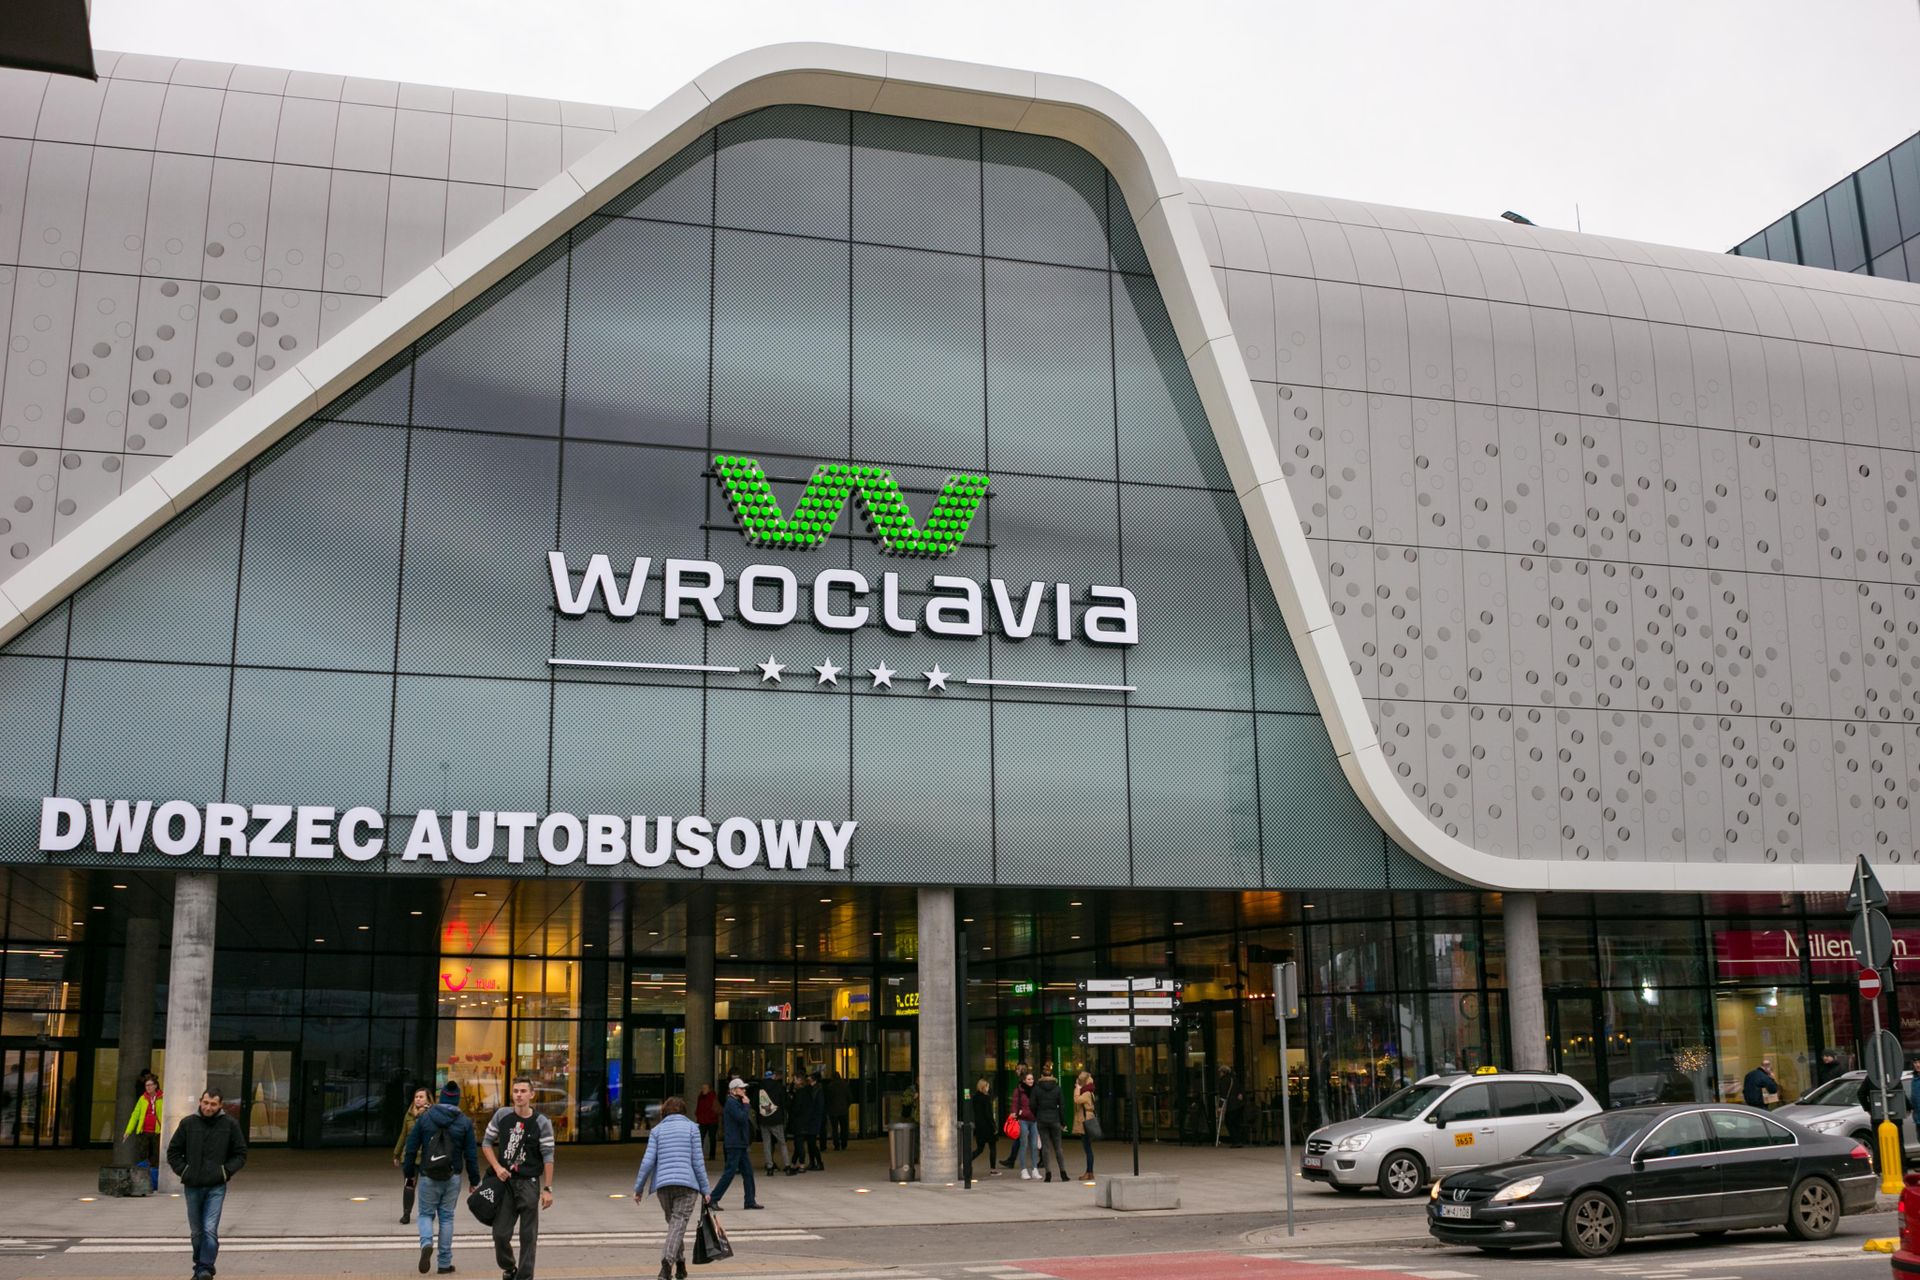  Przedstawiciele Wroclavii nie potwierdzają otwarcia w każdą niedzielę